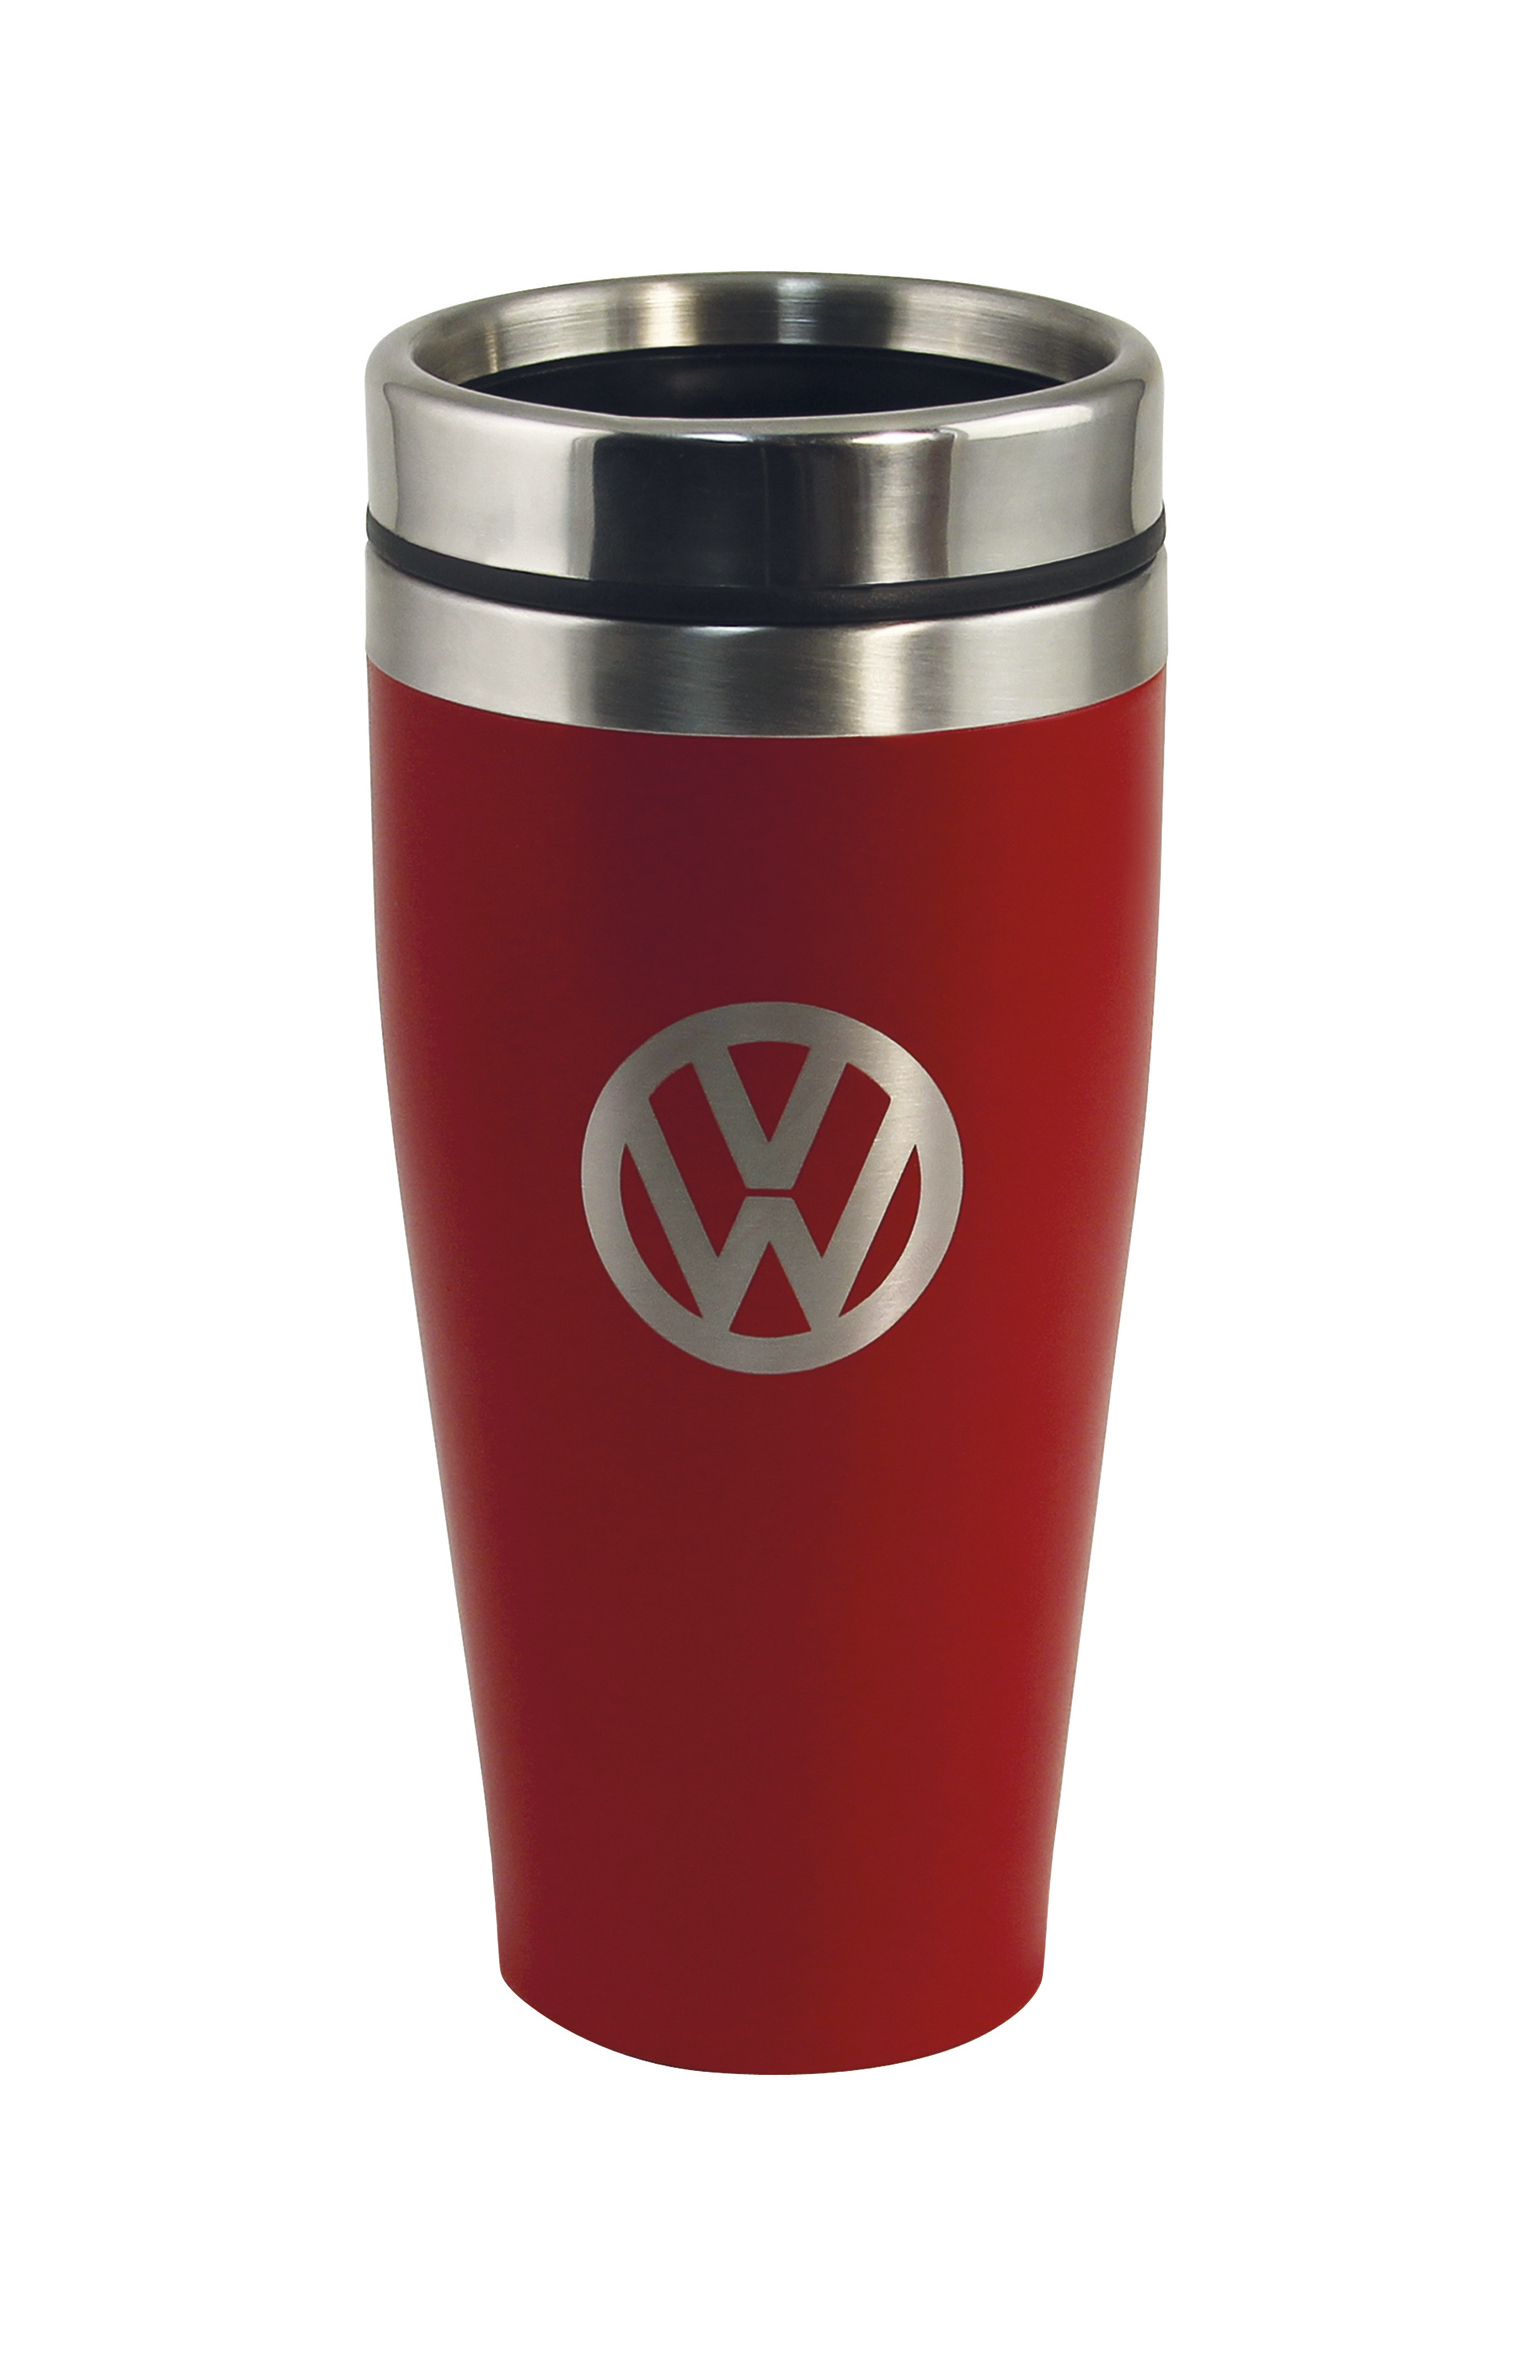 Tazza termica VW in acciaio inox, a doppia parete, 450 ml
